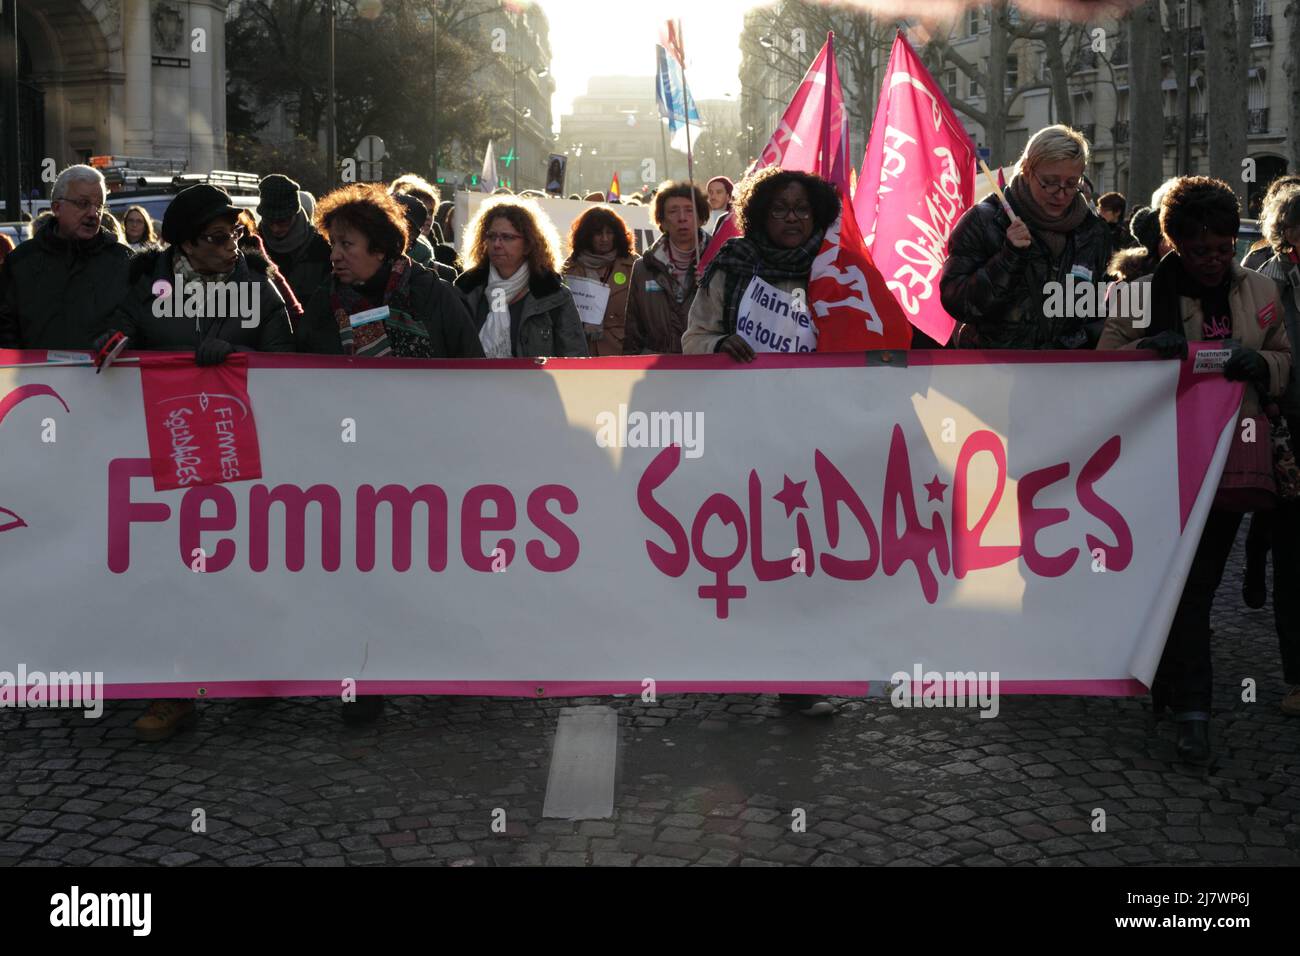 Paris : Manifestation contre le projet de loi anti-avortement en Espagne 01er février 2014. Banderole Femmes Solidaires Stock Photo